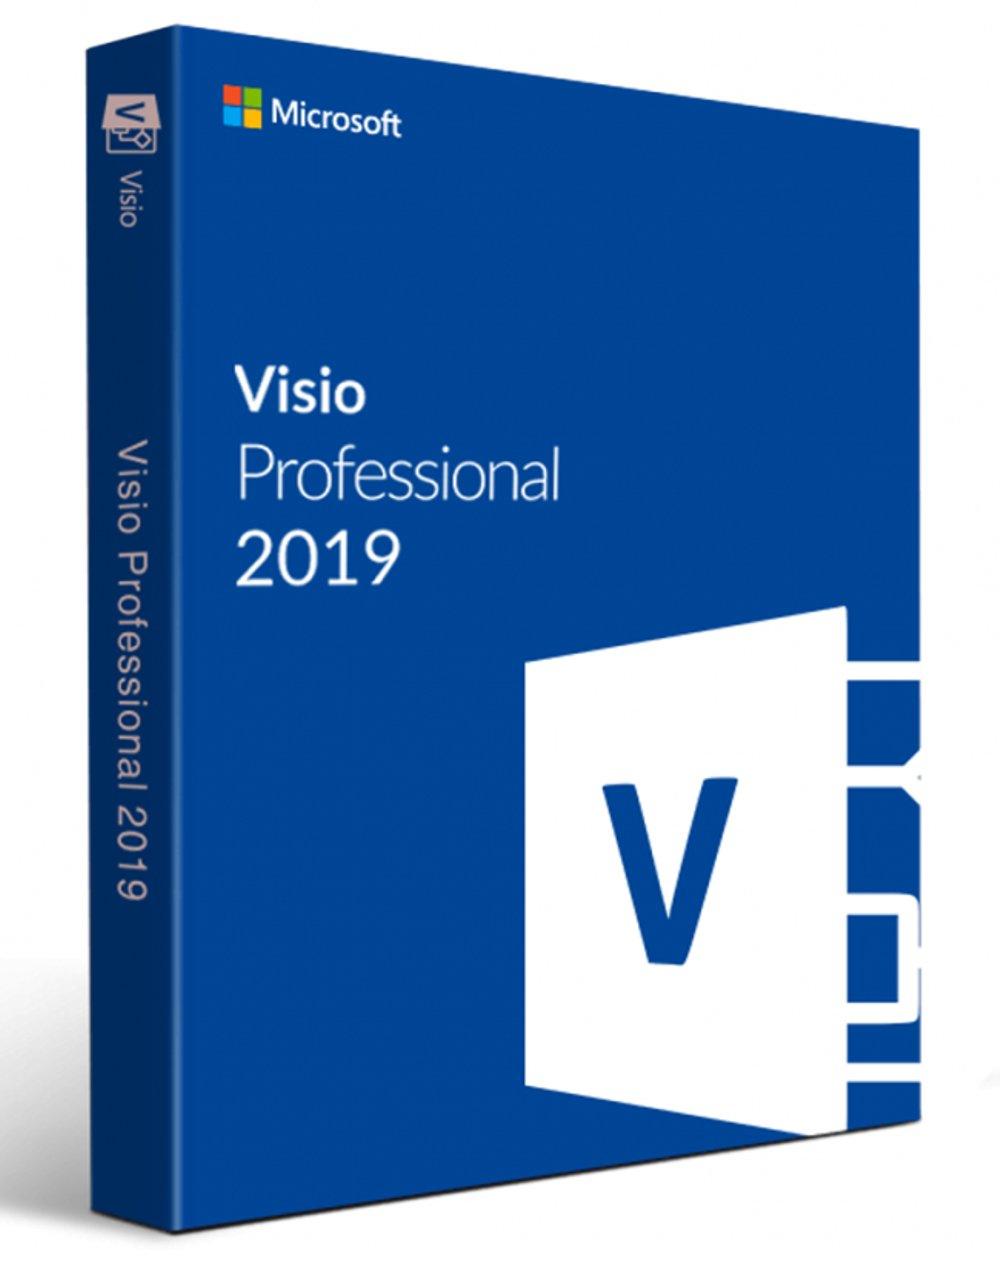 Microsoft Visio Professional 2019 Open Value License (OVL) 1 license(s) Multilingual